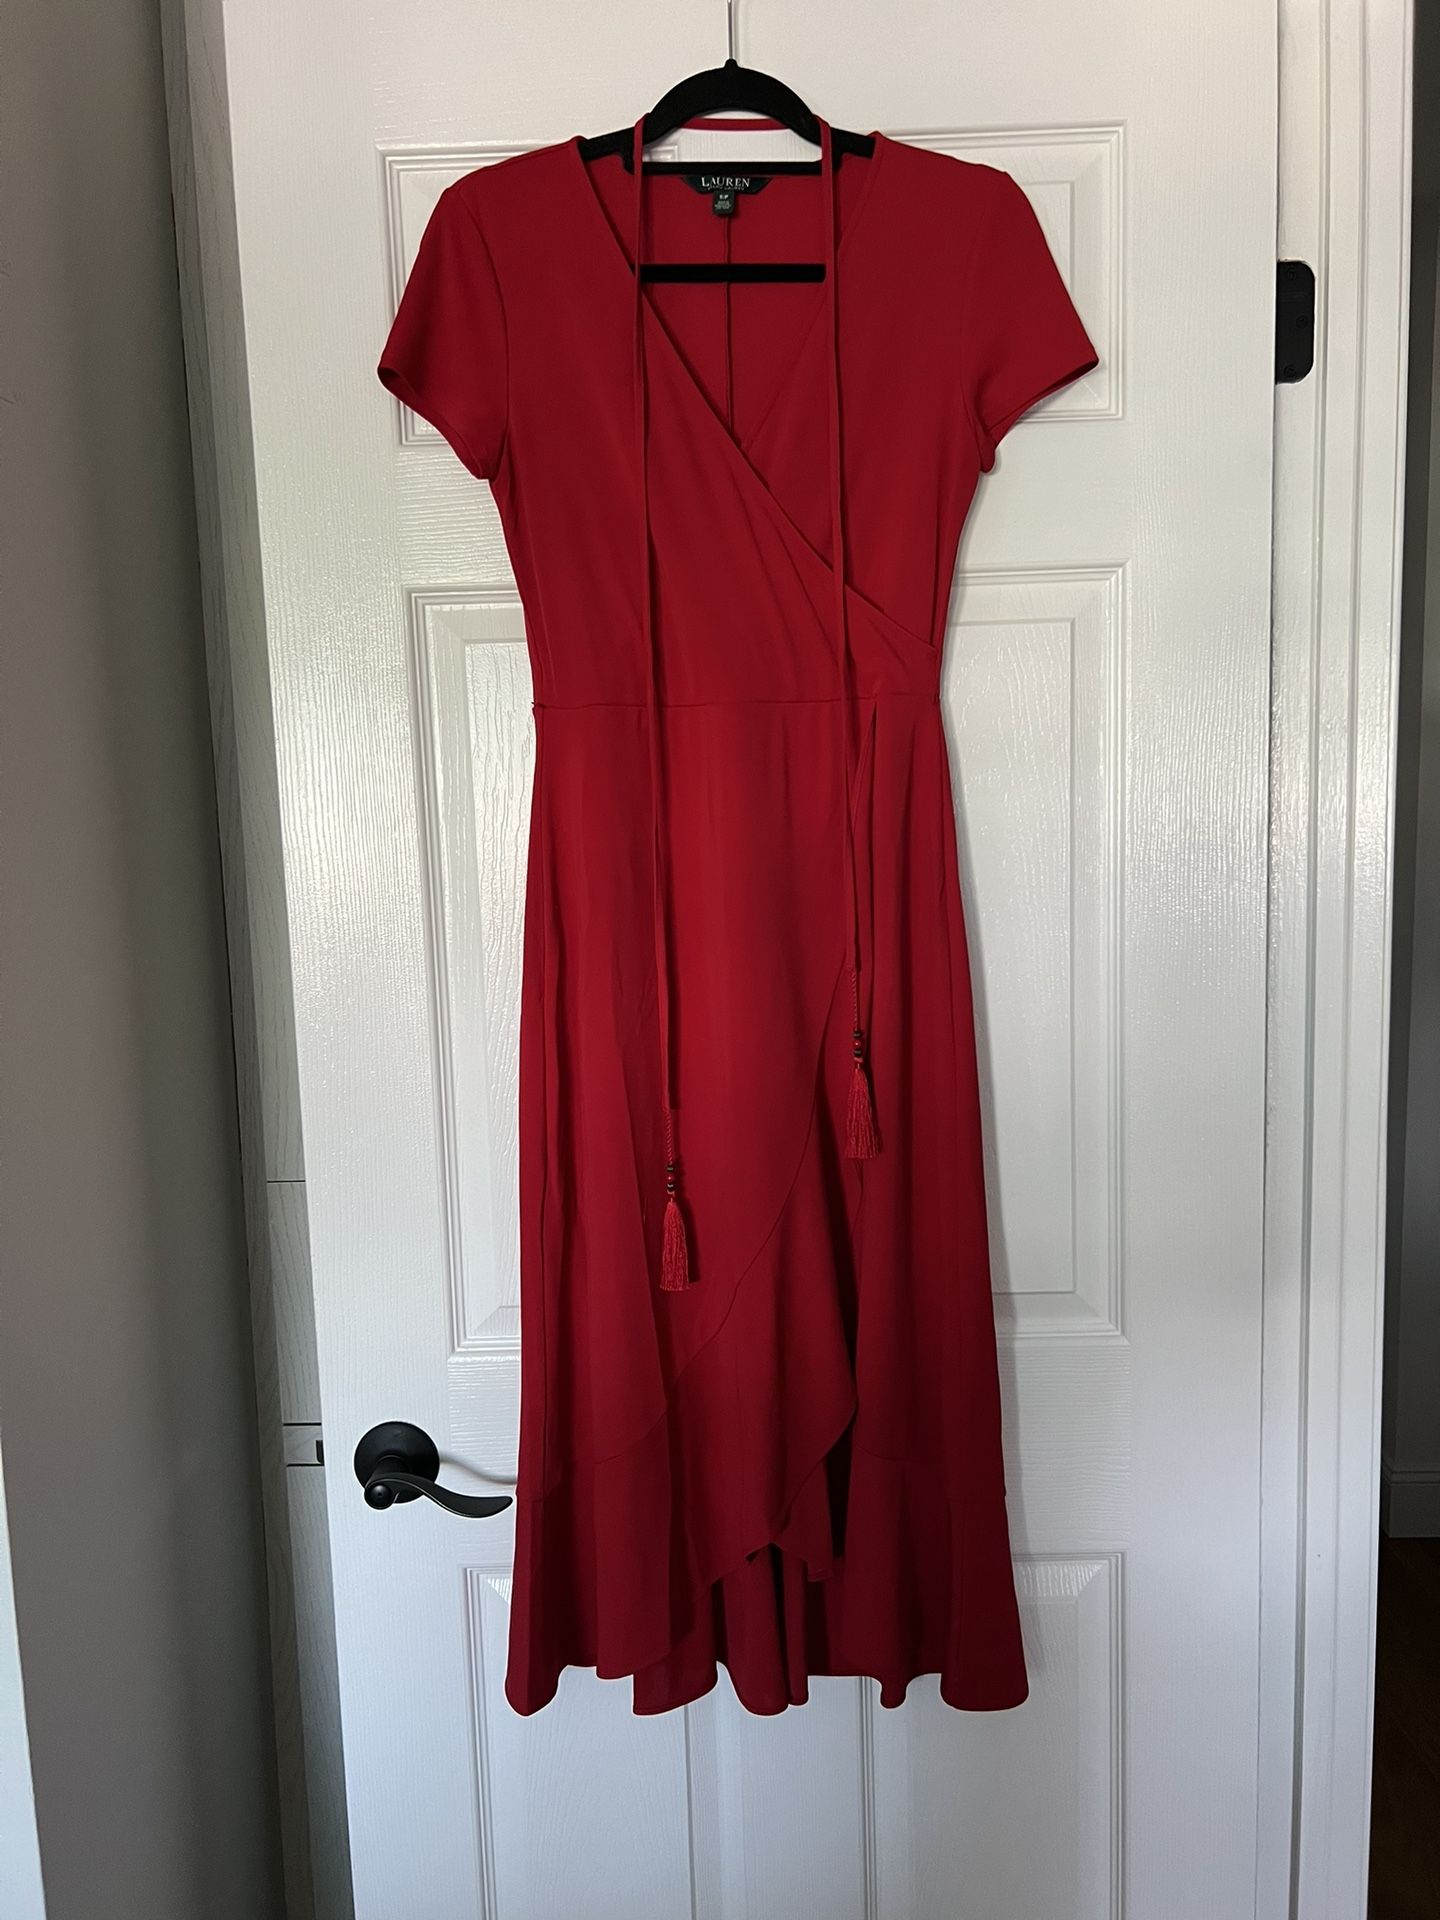 Ralph Lauren Red Dress Size Small